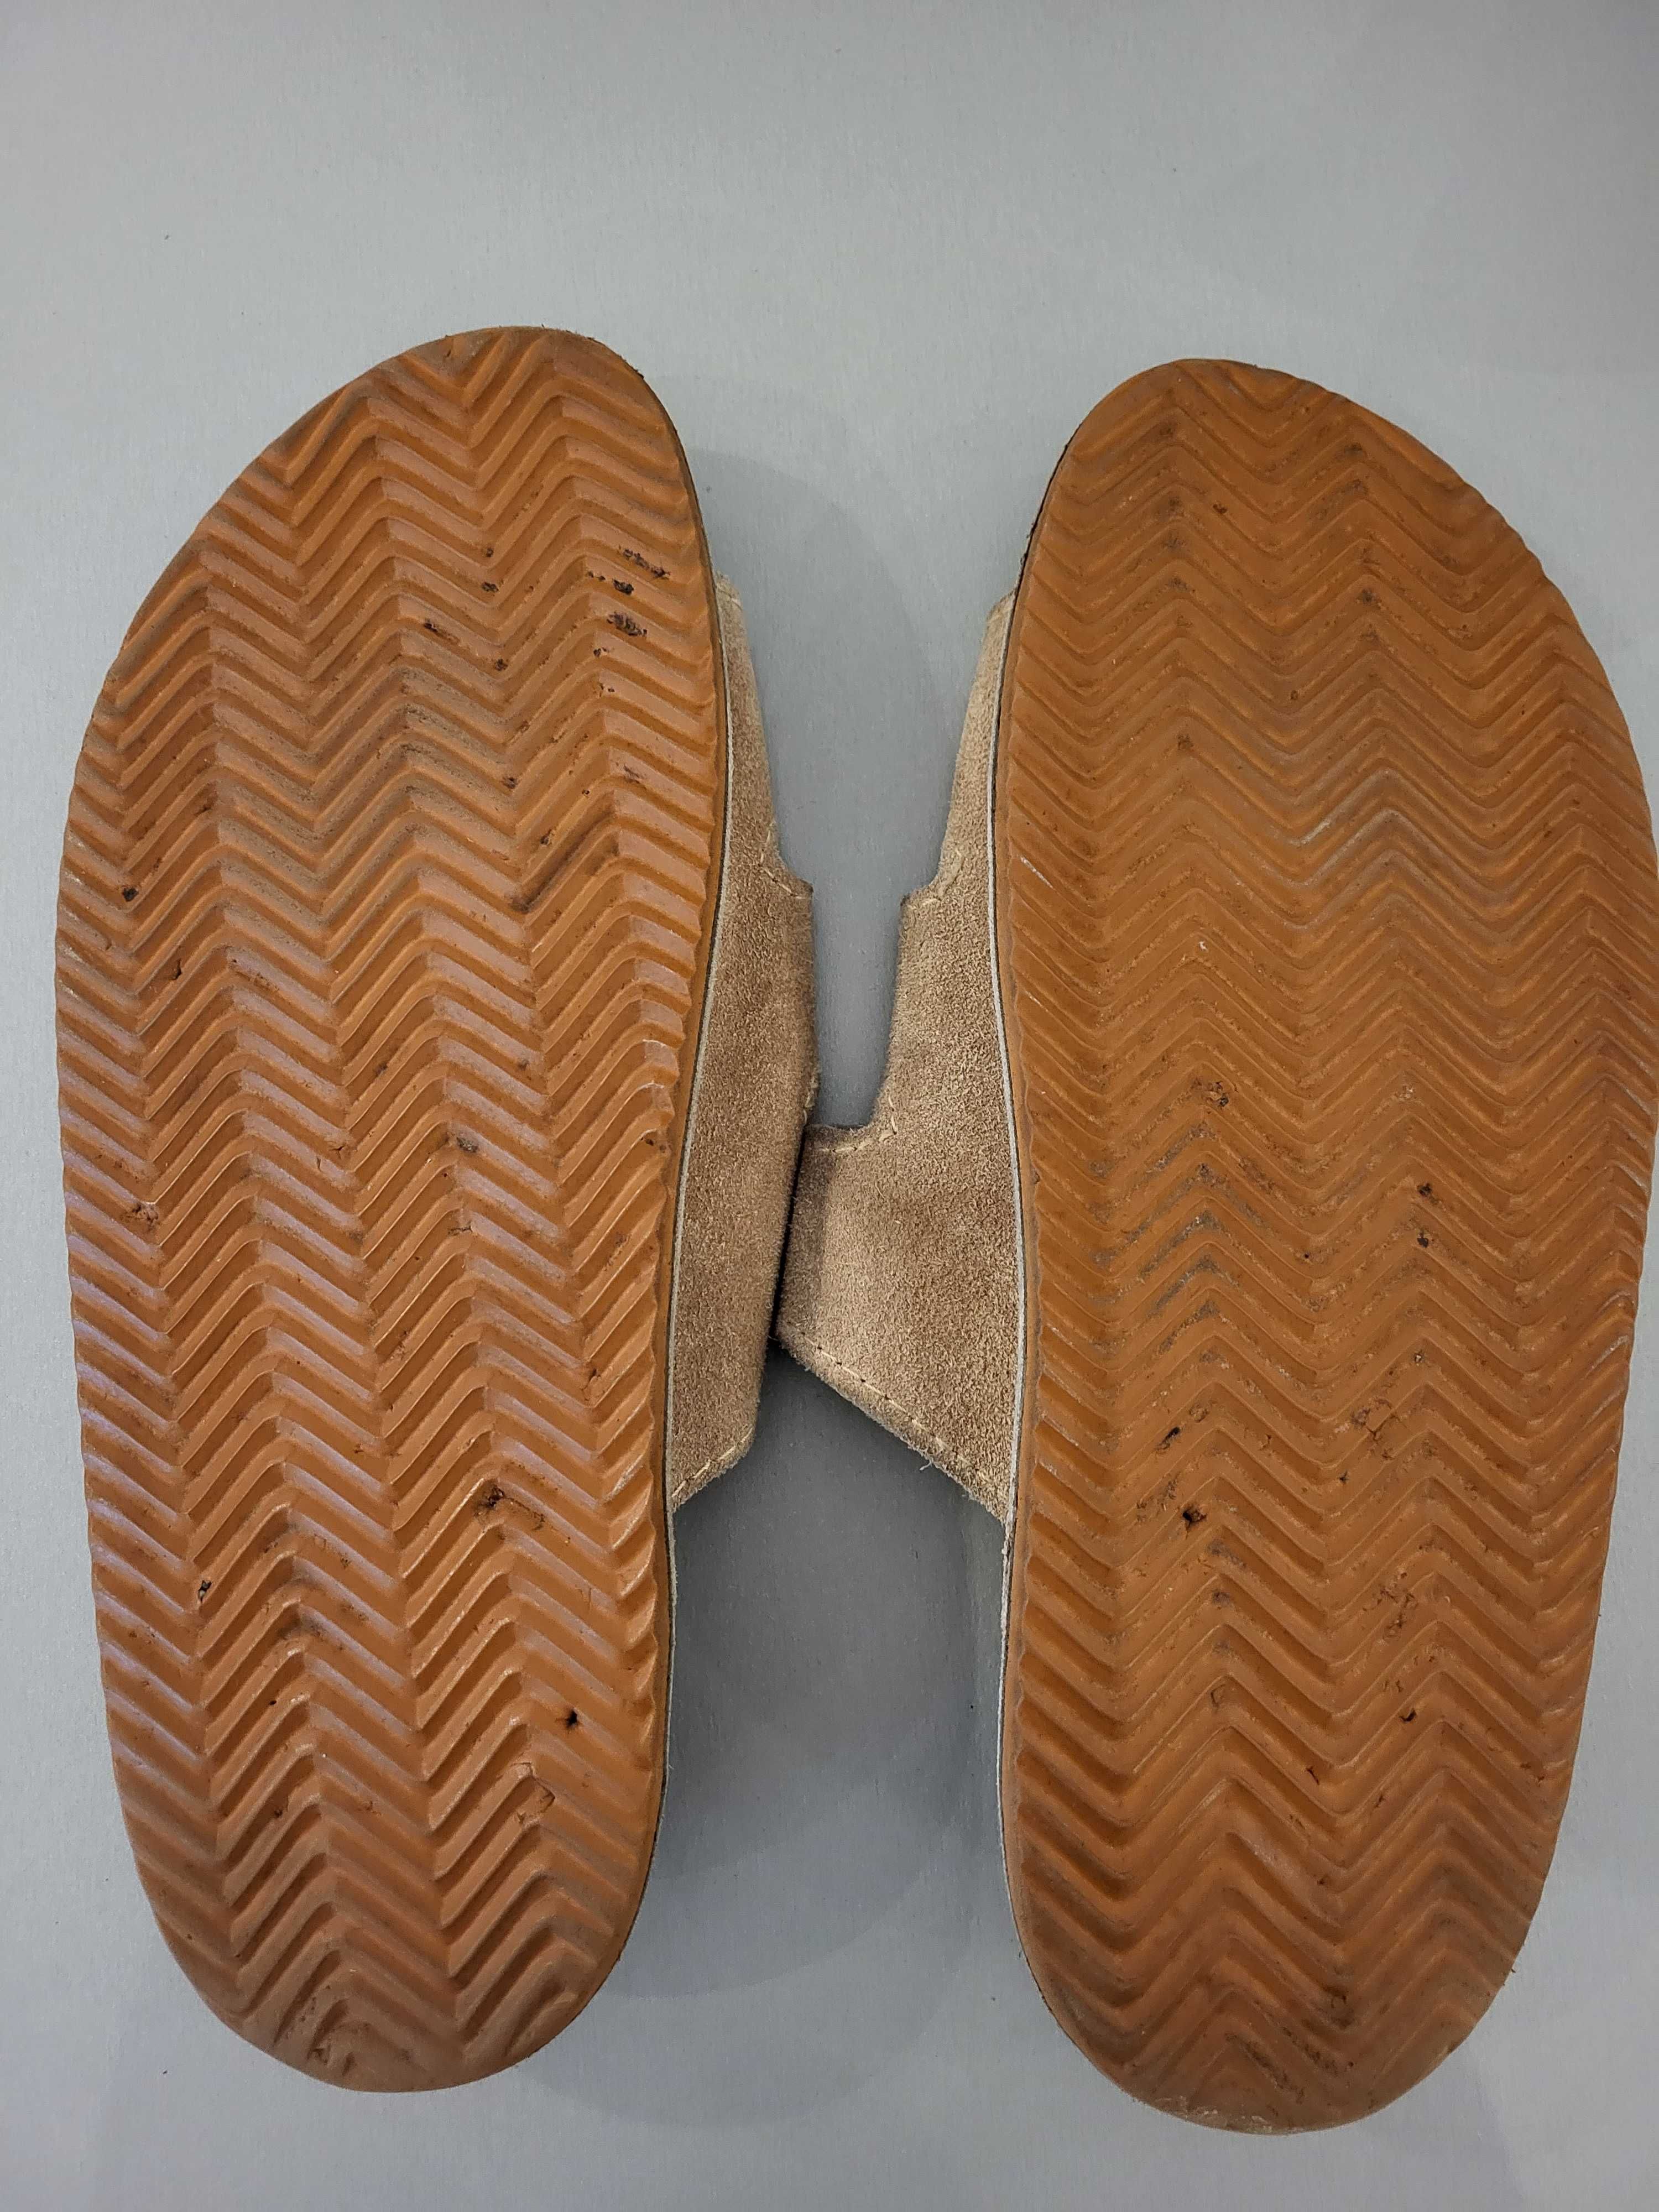 Sandały męskie skórzane mało używane rozm. 27-27,5 cm - stan bdb